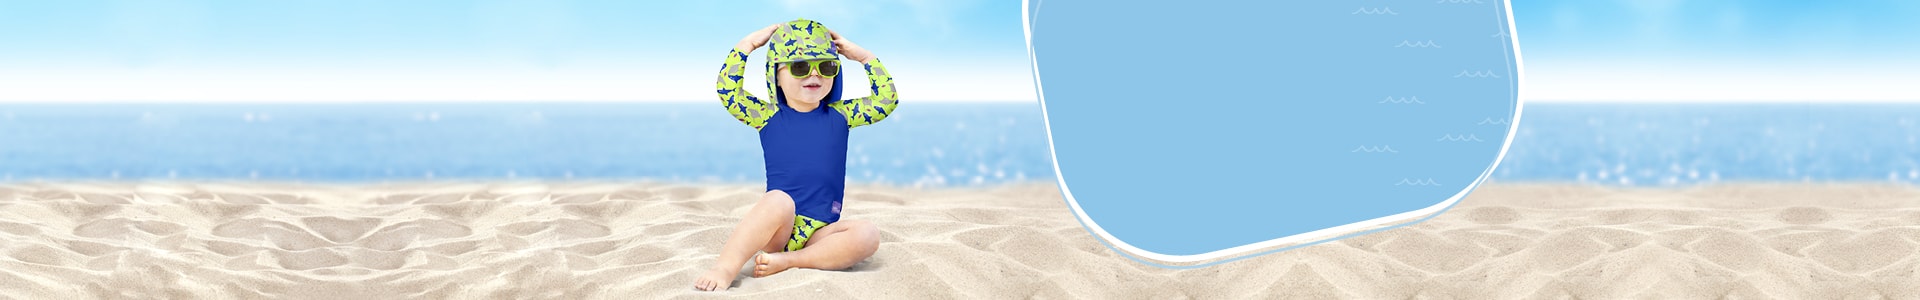 Banner della pagina consigli per il nuoto, con un bambino seduto sulla spiaggia che indossa un completo da nuoto